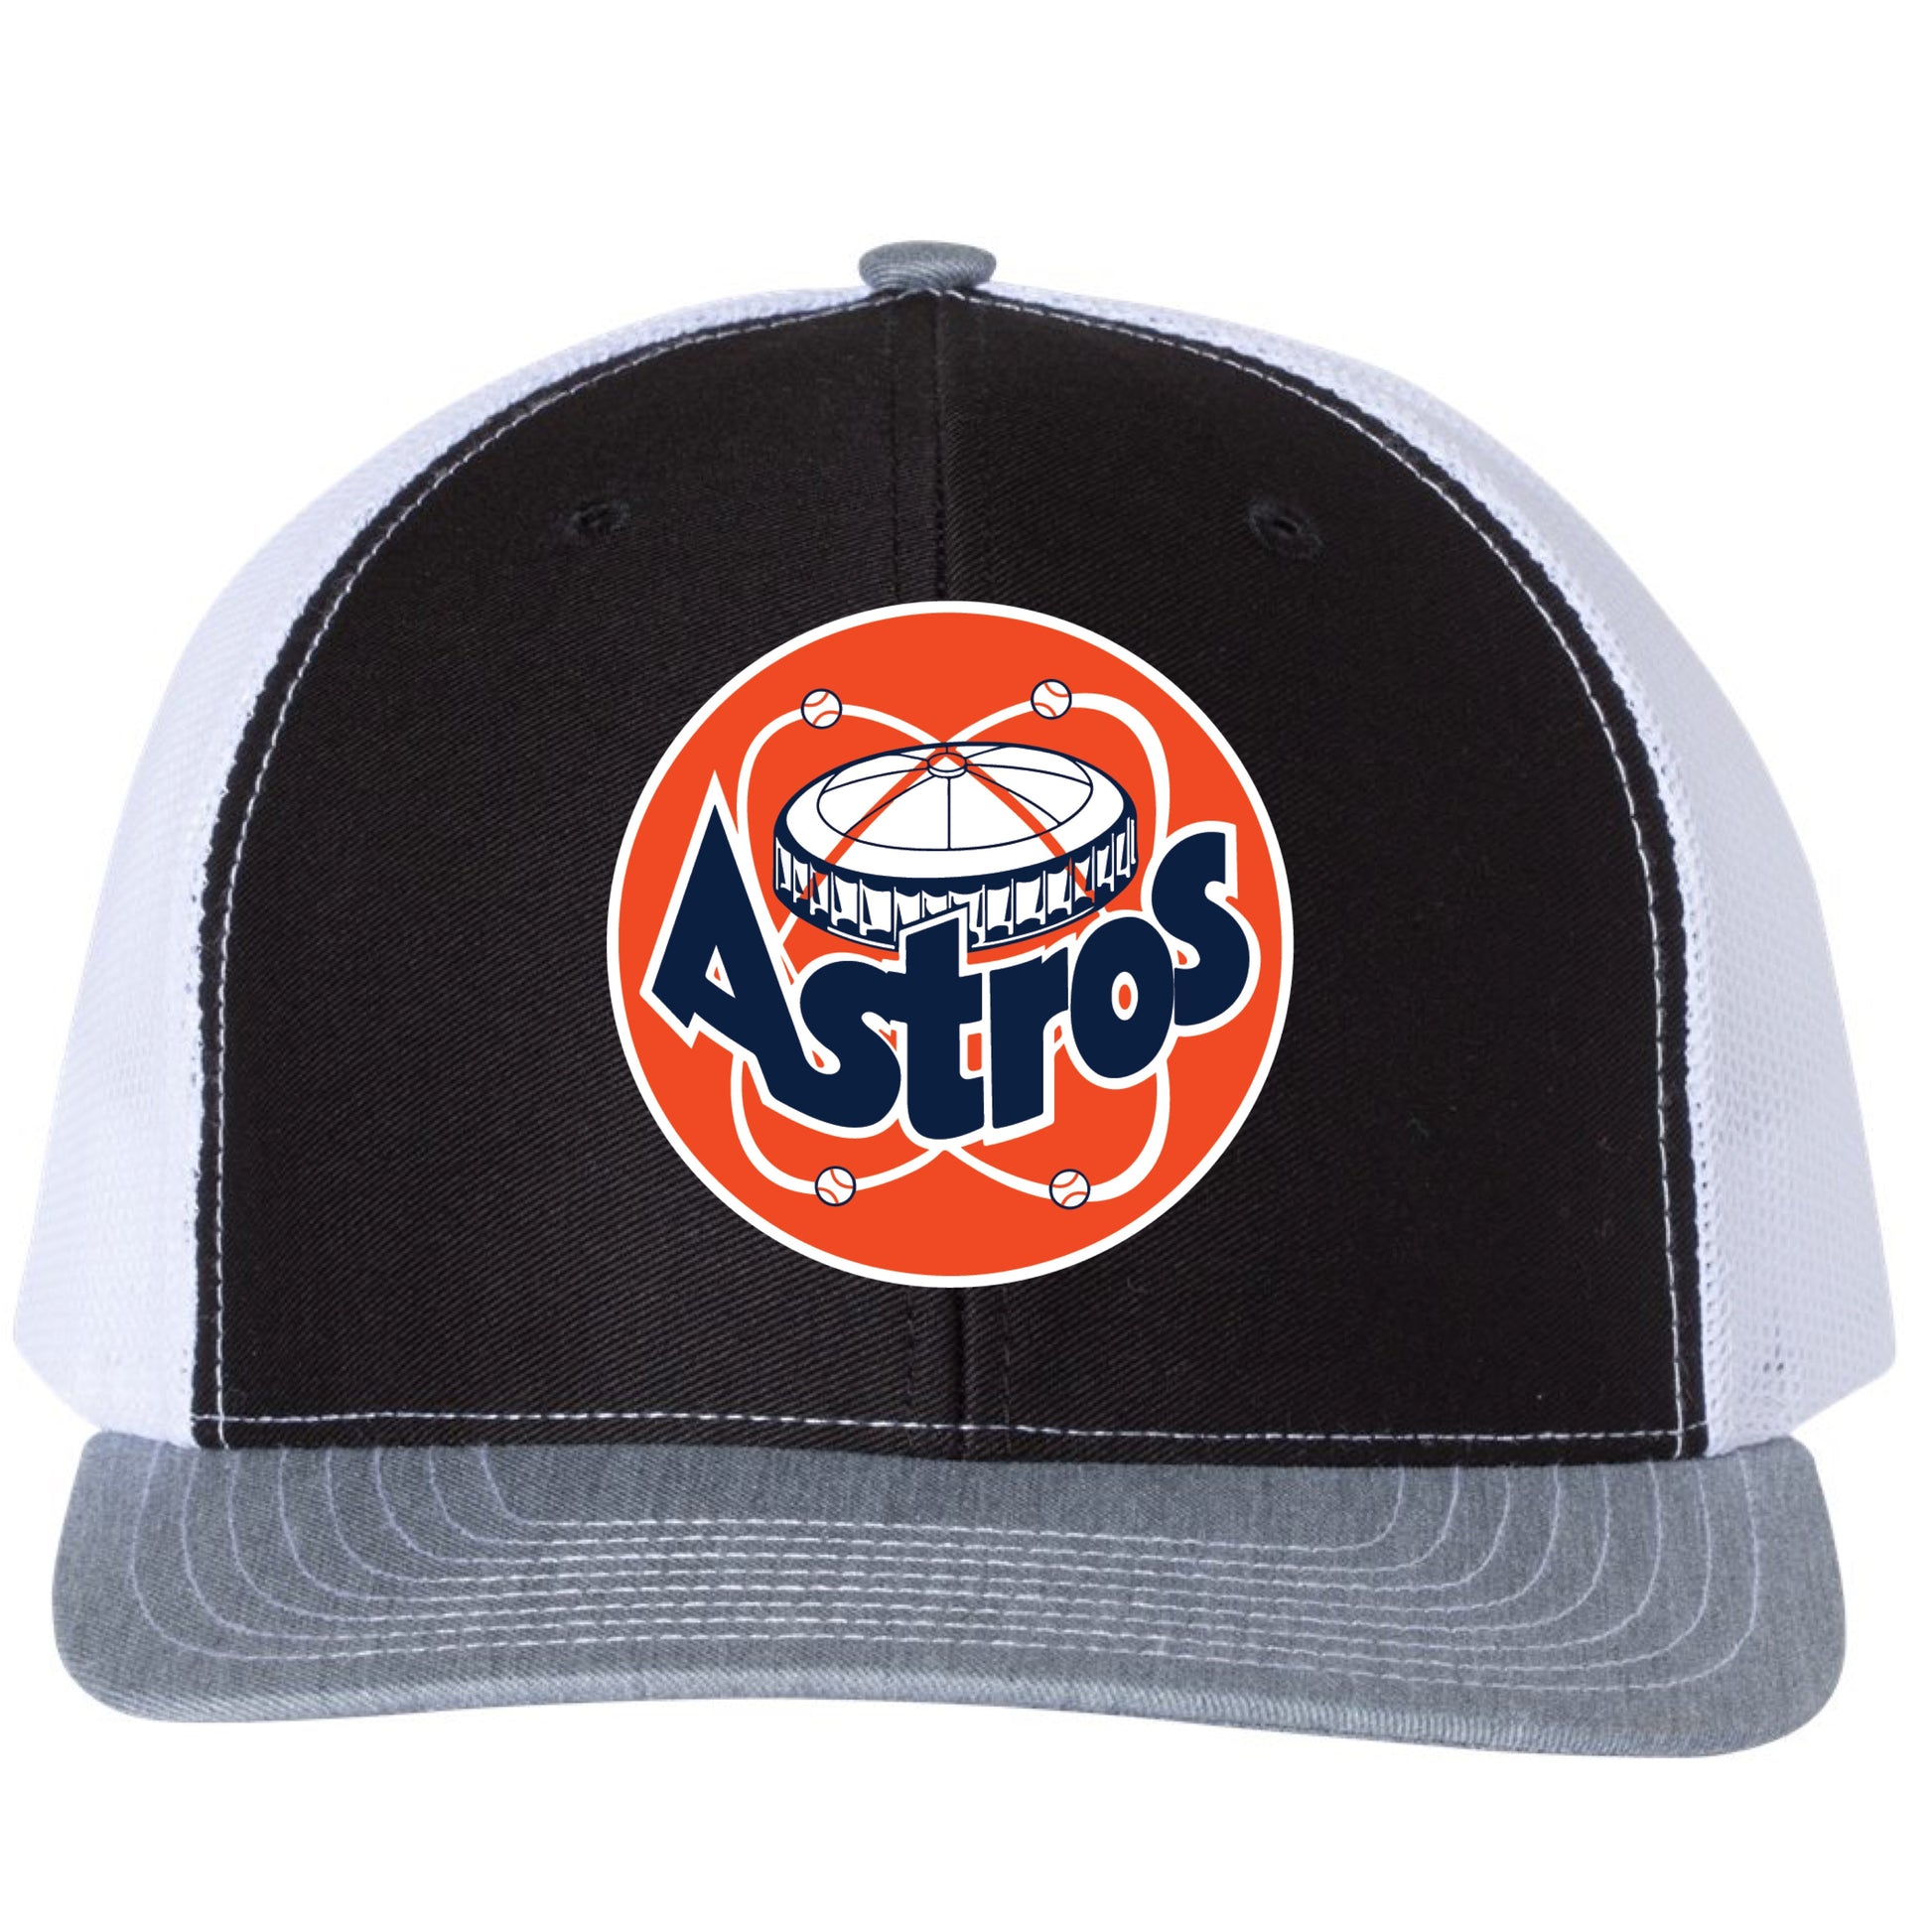 Astros Retro Astrodome Classic 3D Snapback Trucker Hat- Black/ White/ Heather Grey - Ten Gallon Hat Co.